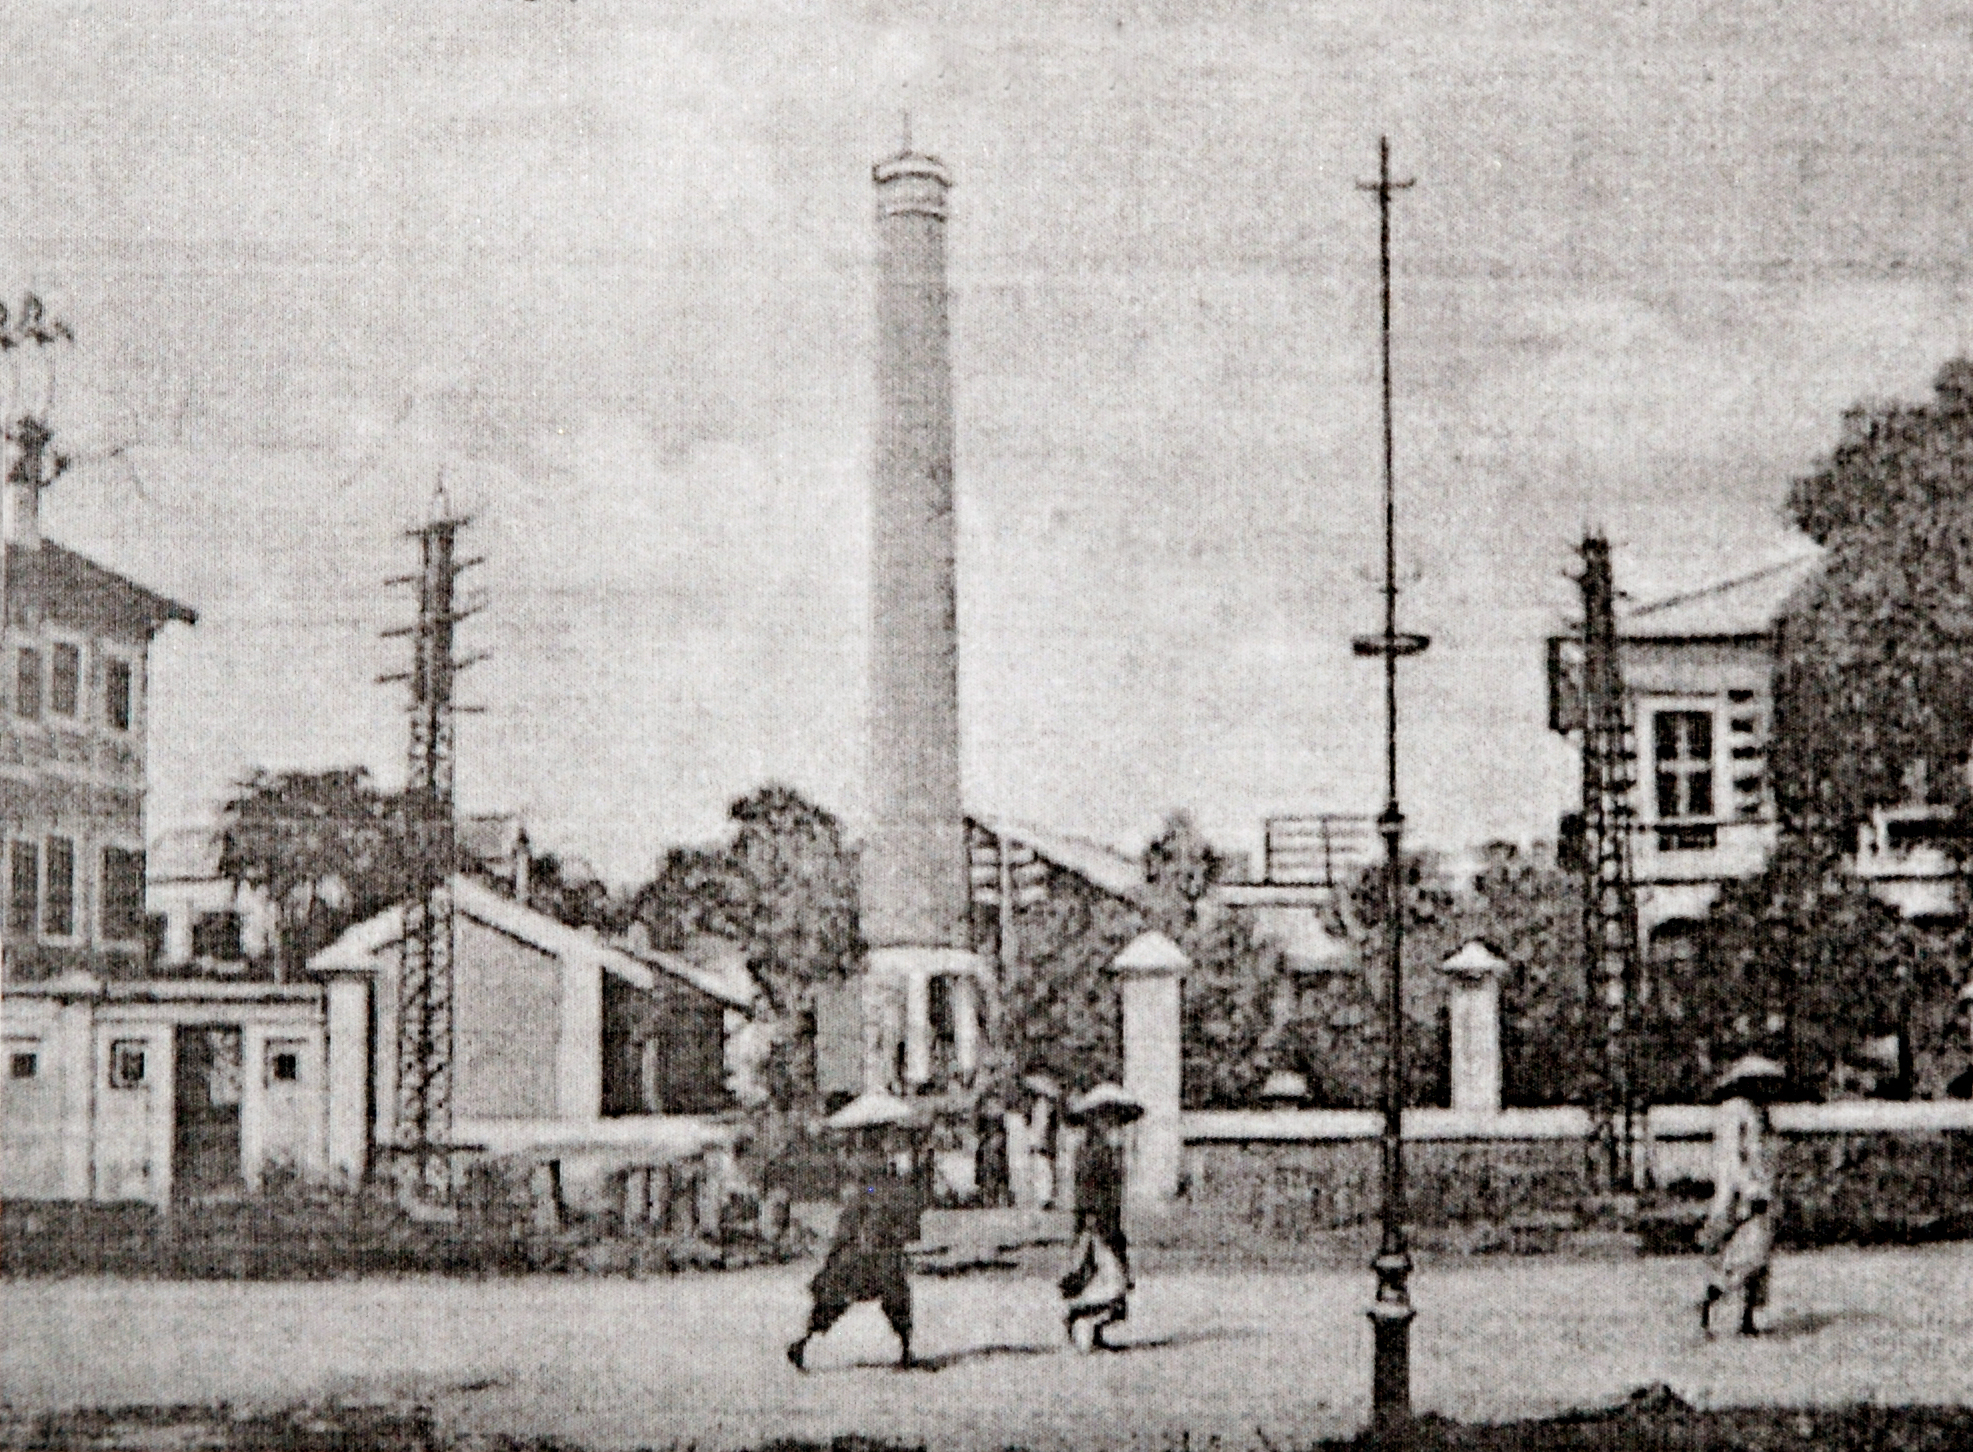 Nhà máy đèn Bờ Hồ tại phố Frăng-xi-Gác-ni-ê bên cạnh hồ Hoàn Kiếm (nay là phố Đinh Tiên Hoàng)